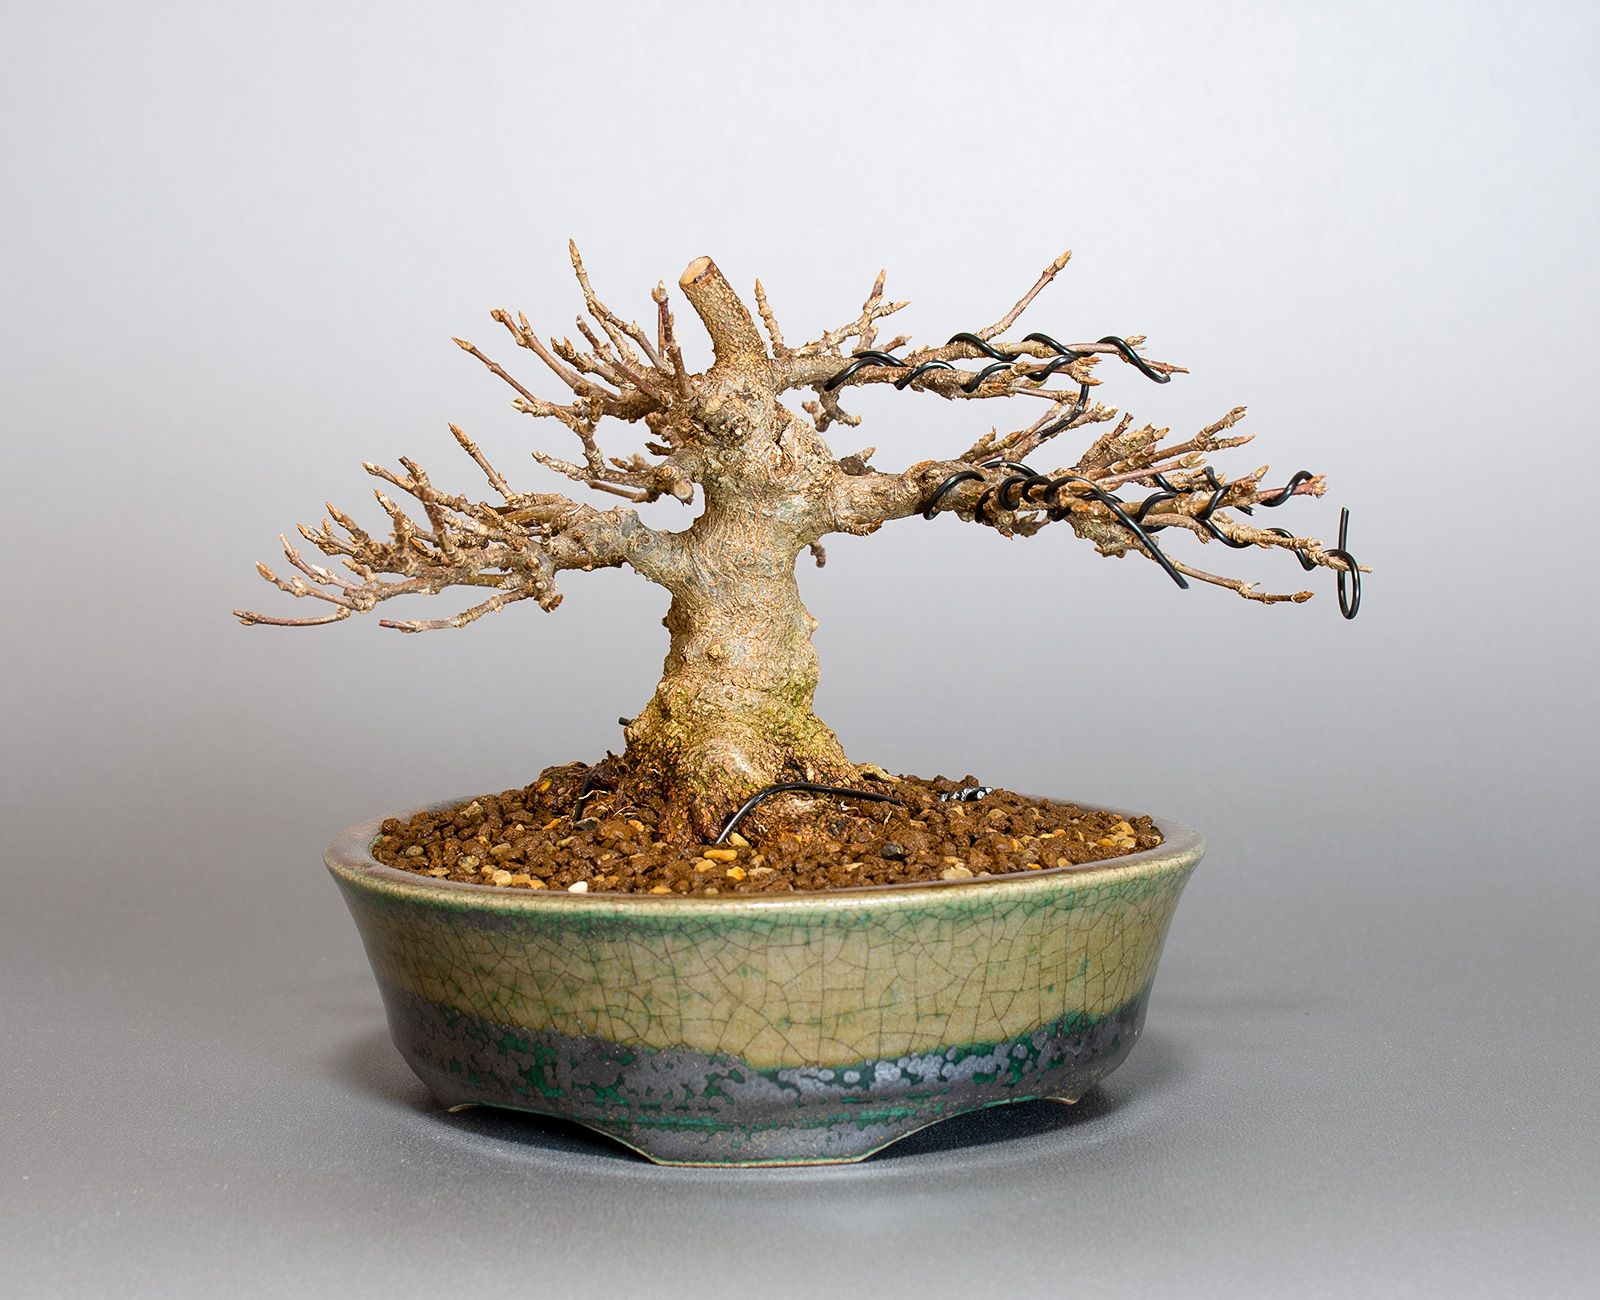 トウカエデ-H2-3（とうかえで・唐楓）雑木盆栽の販売と育て方・作り方・Acer buergerianum bonsai